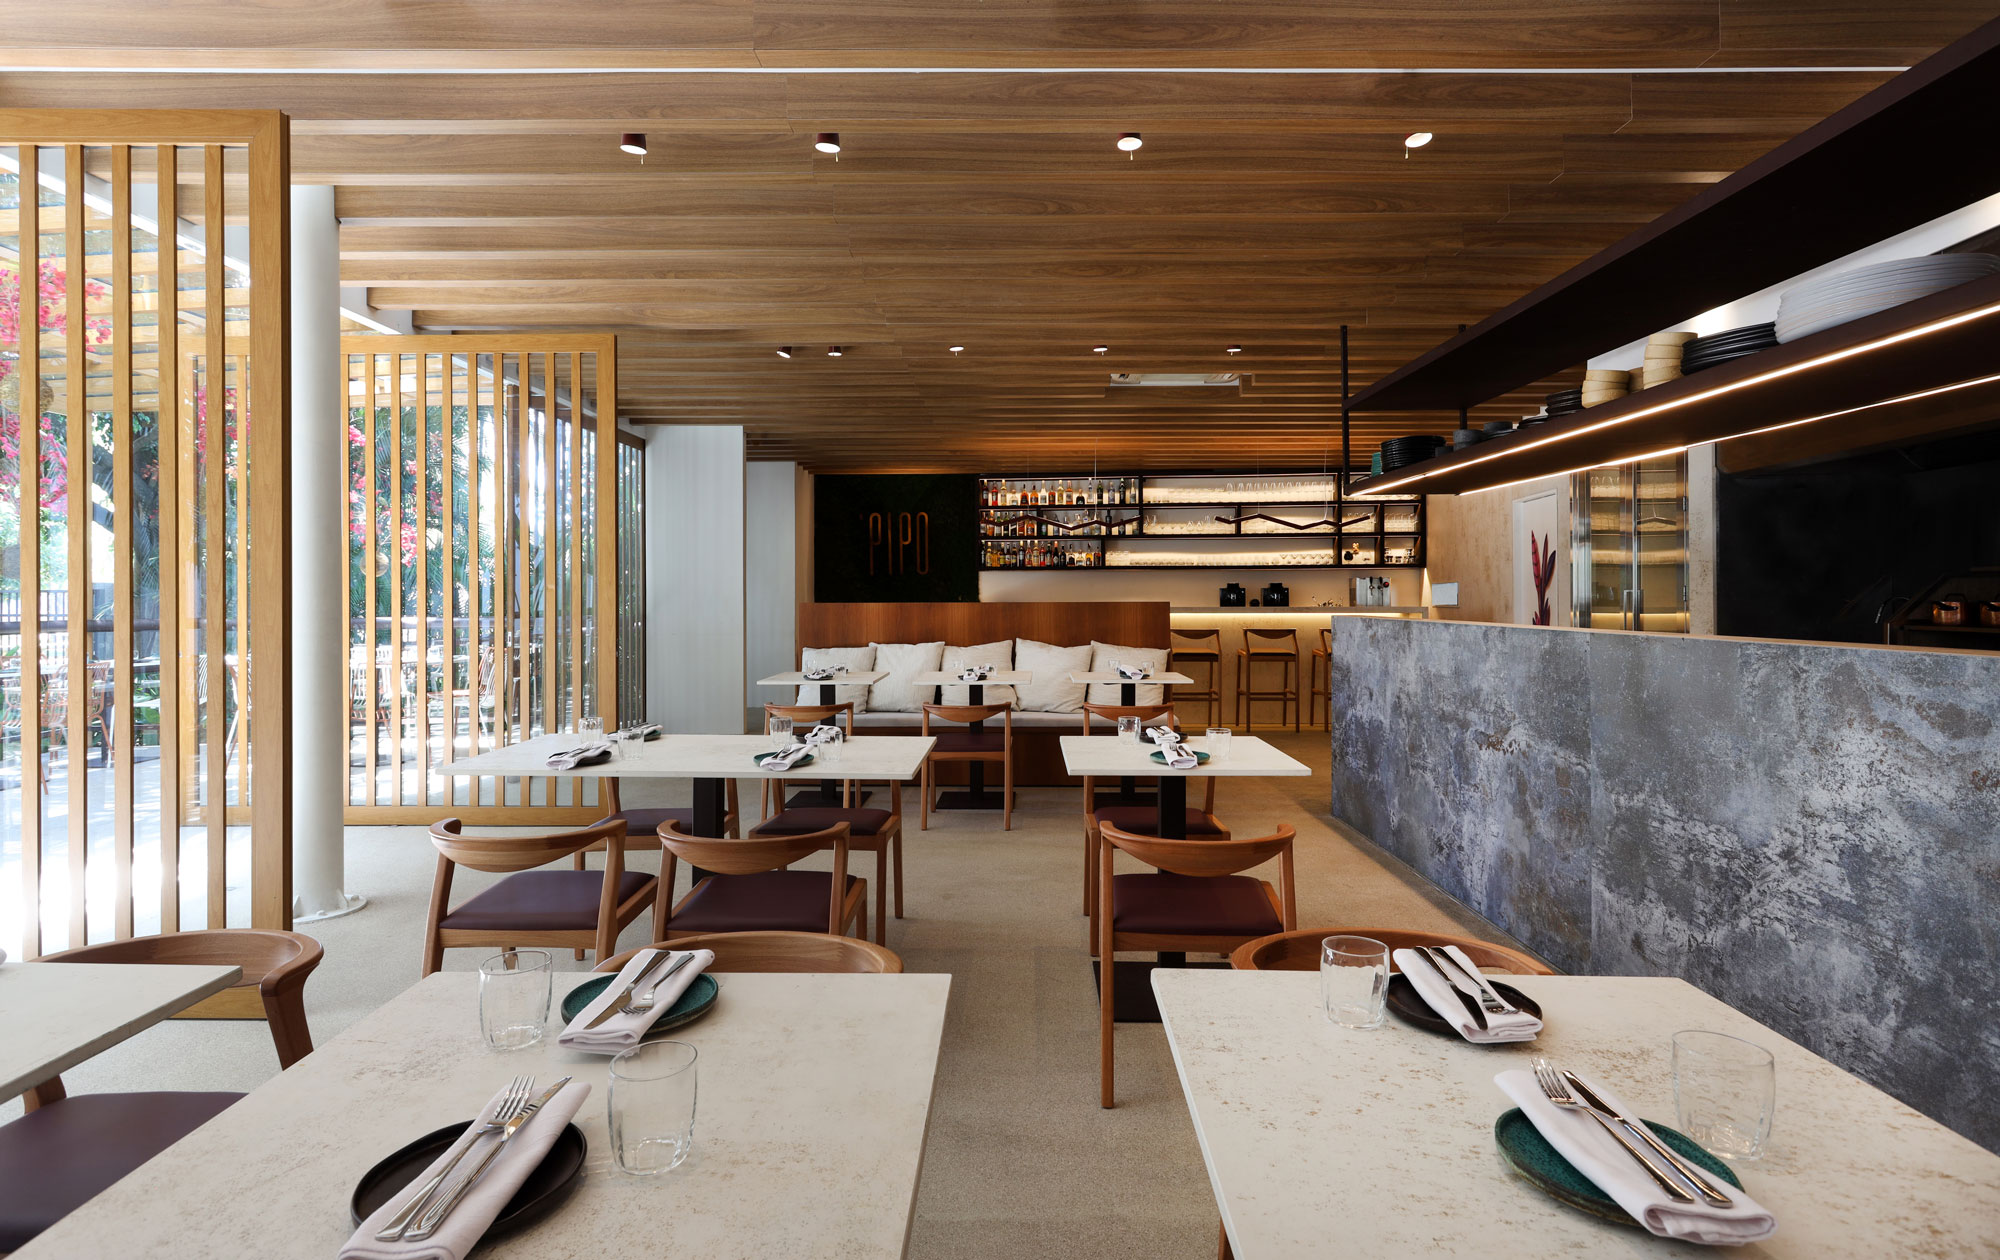 Image of Restaurante Pipo 7 in EMBR Ultra Lounge - Cosentino